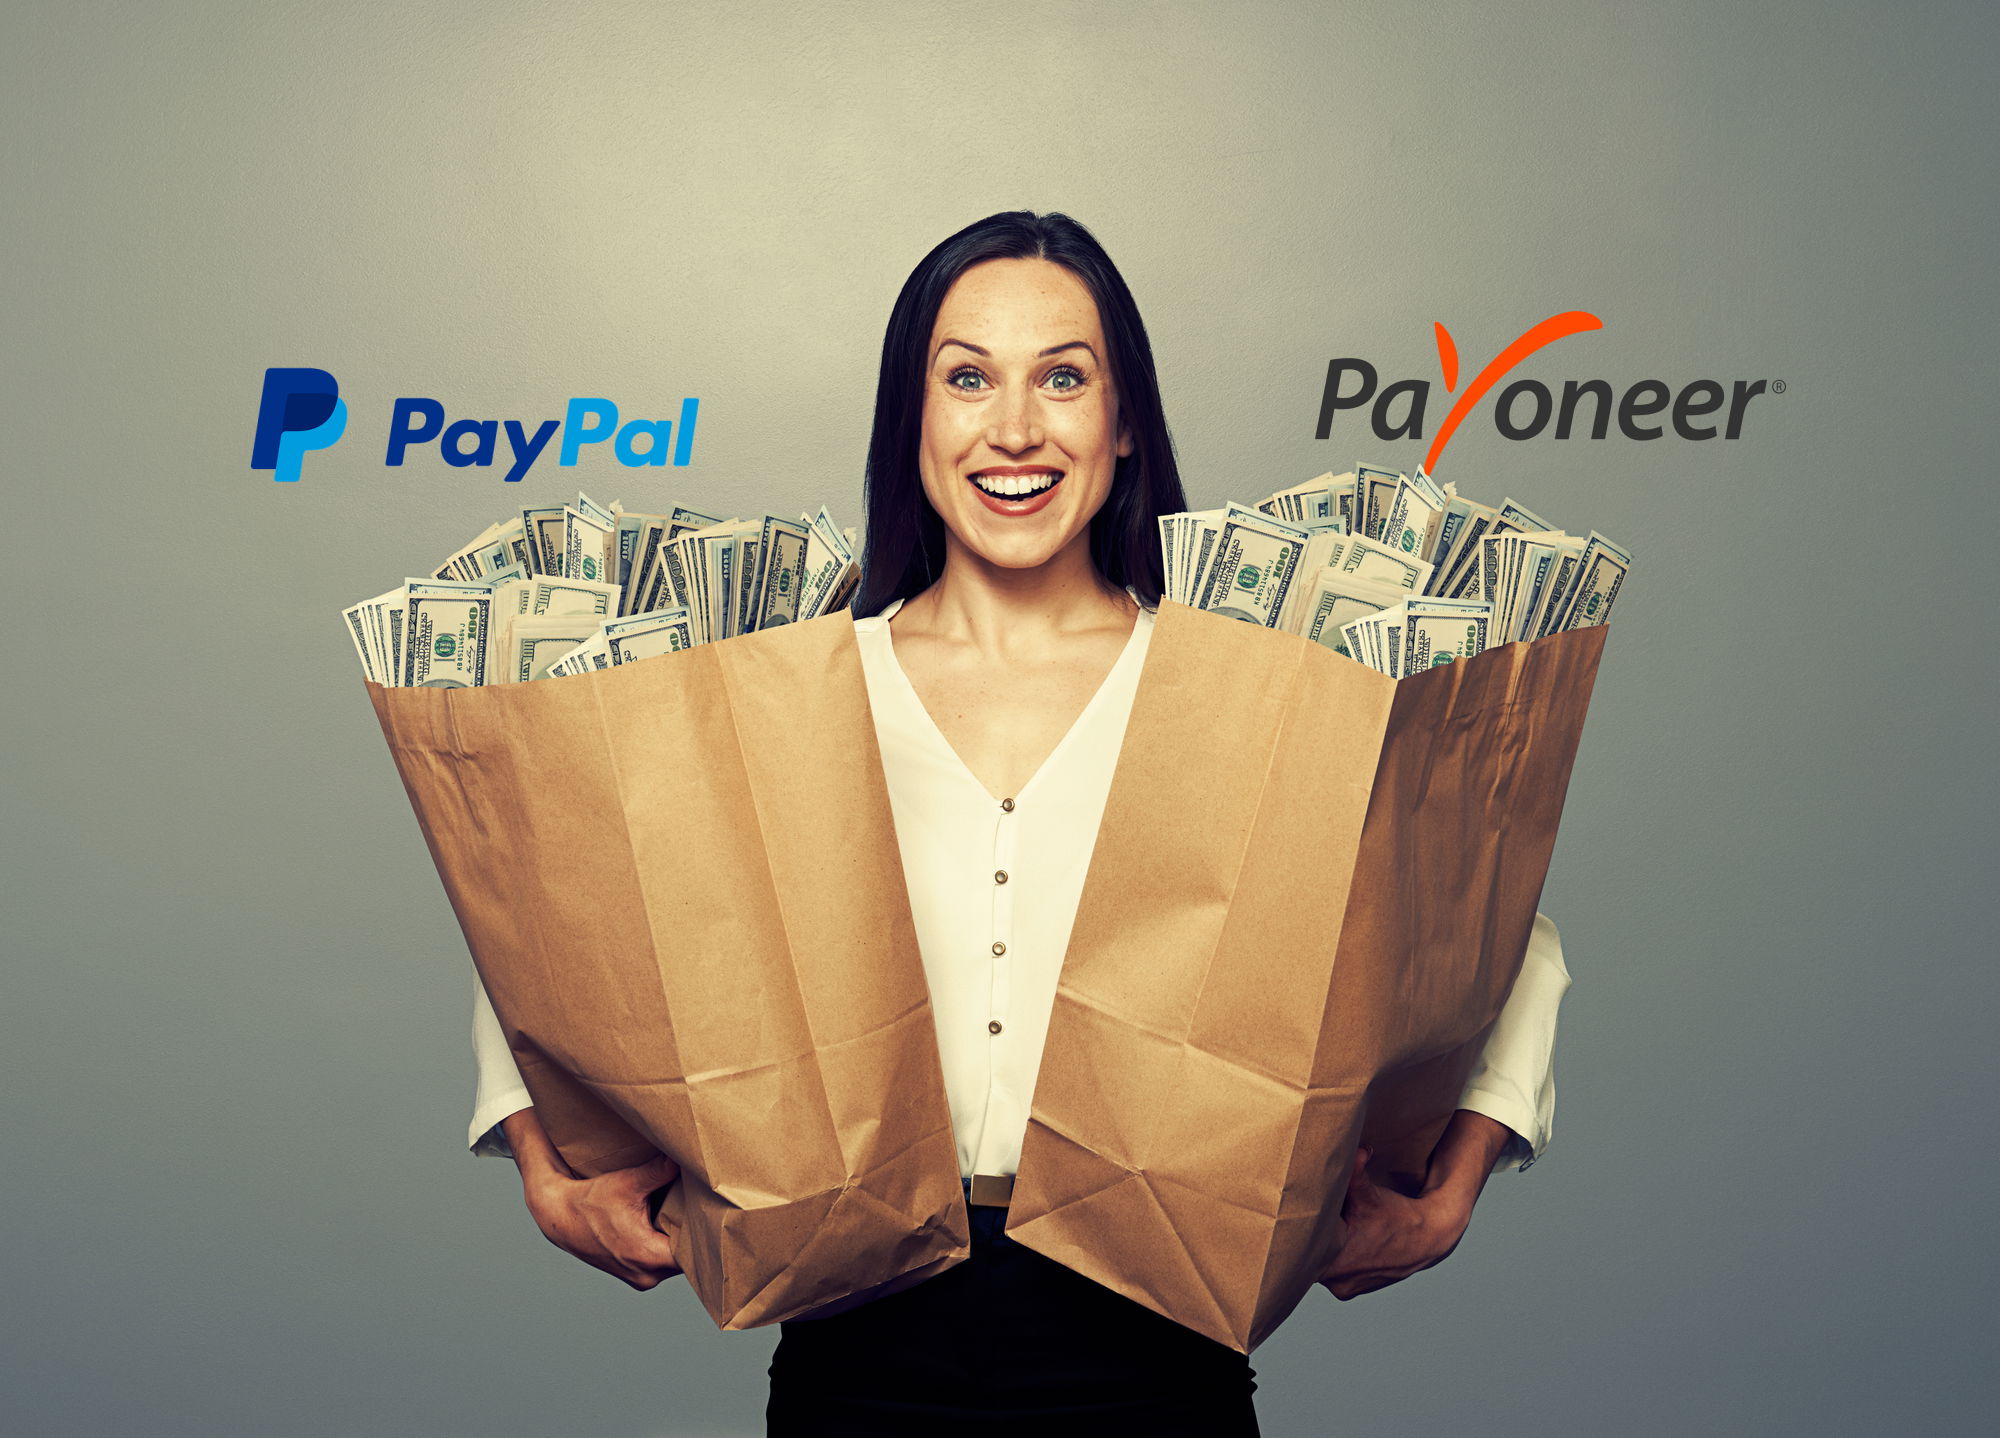 PayPal or Payoneer Make More Money